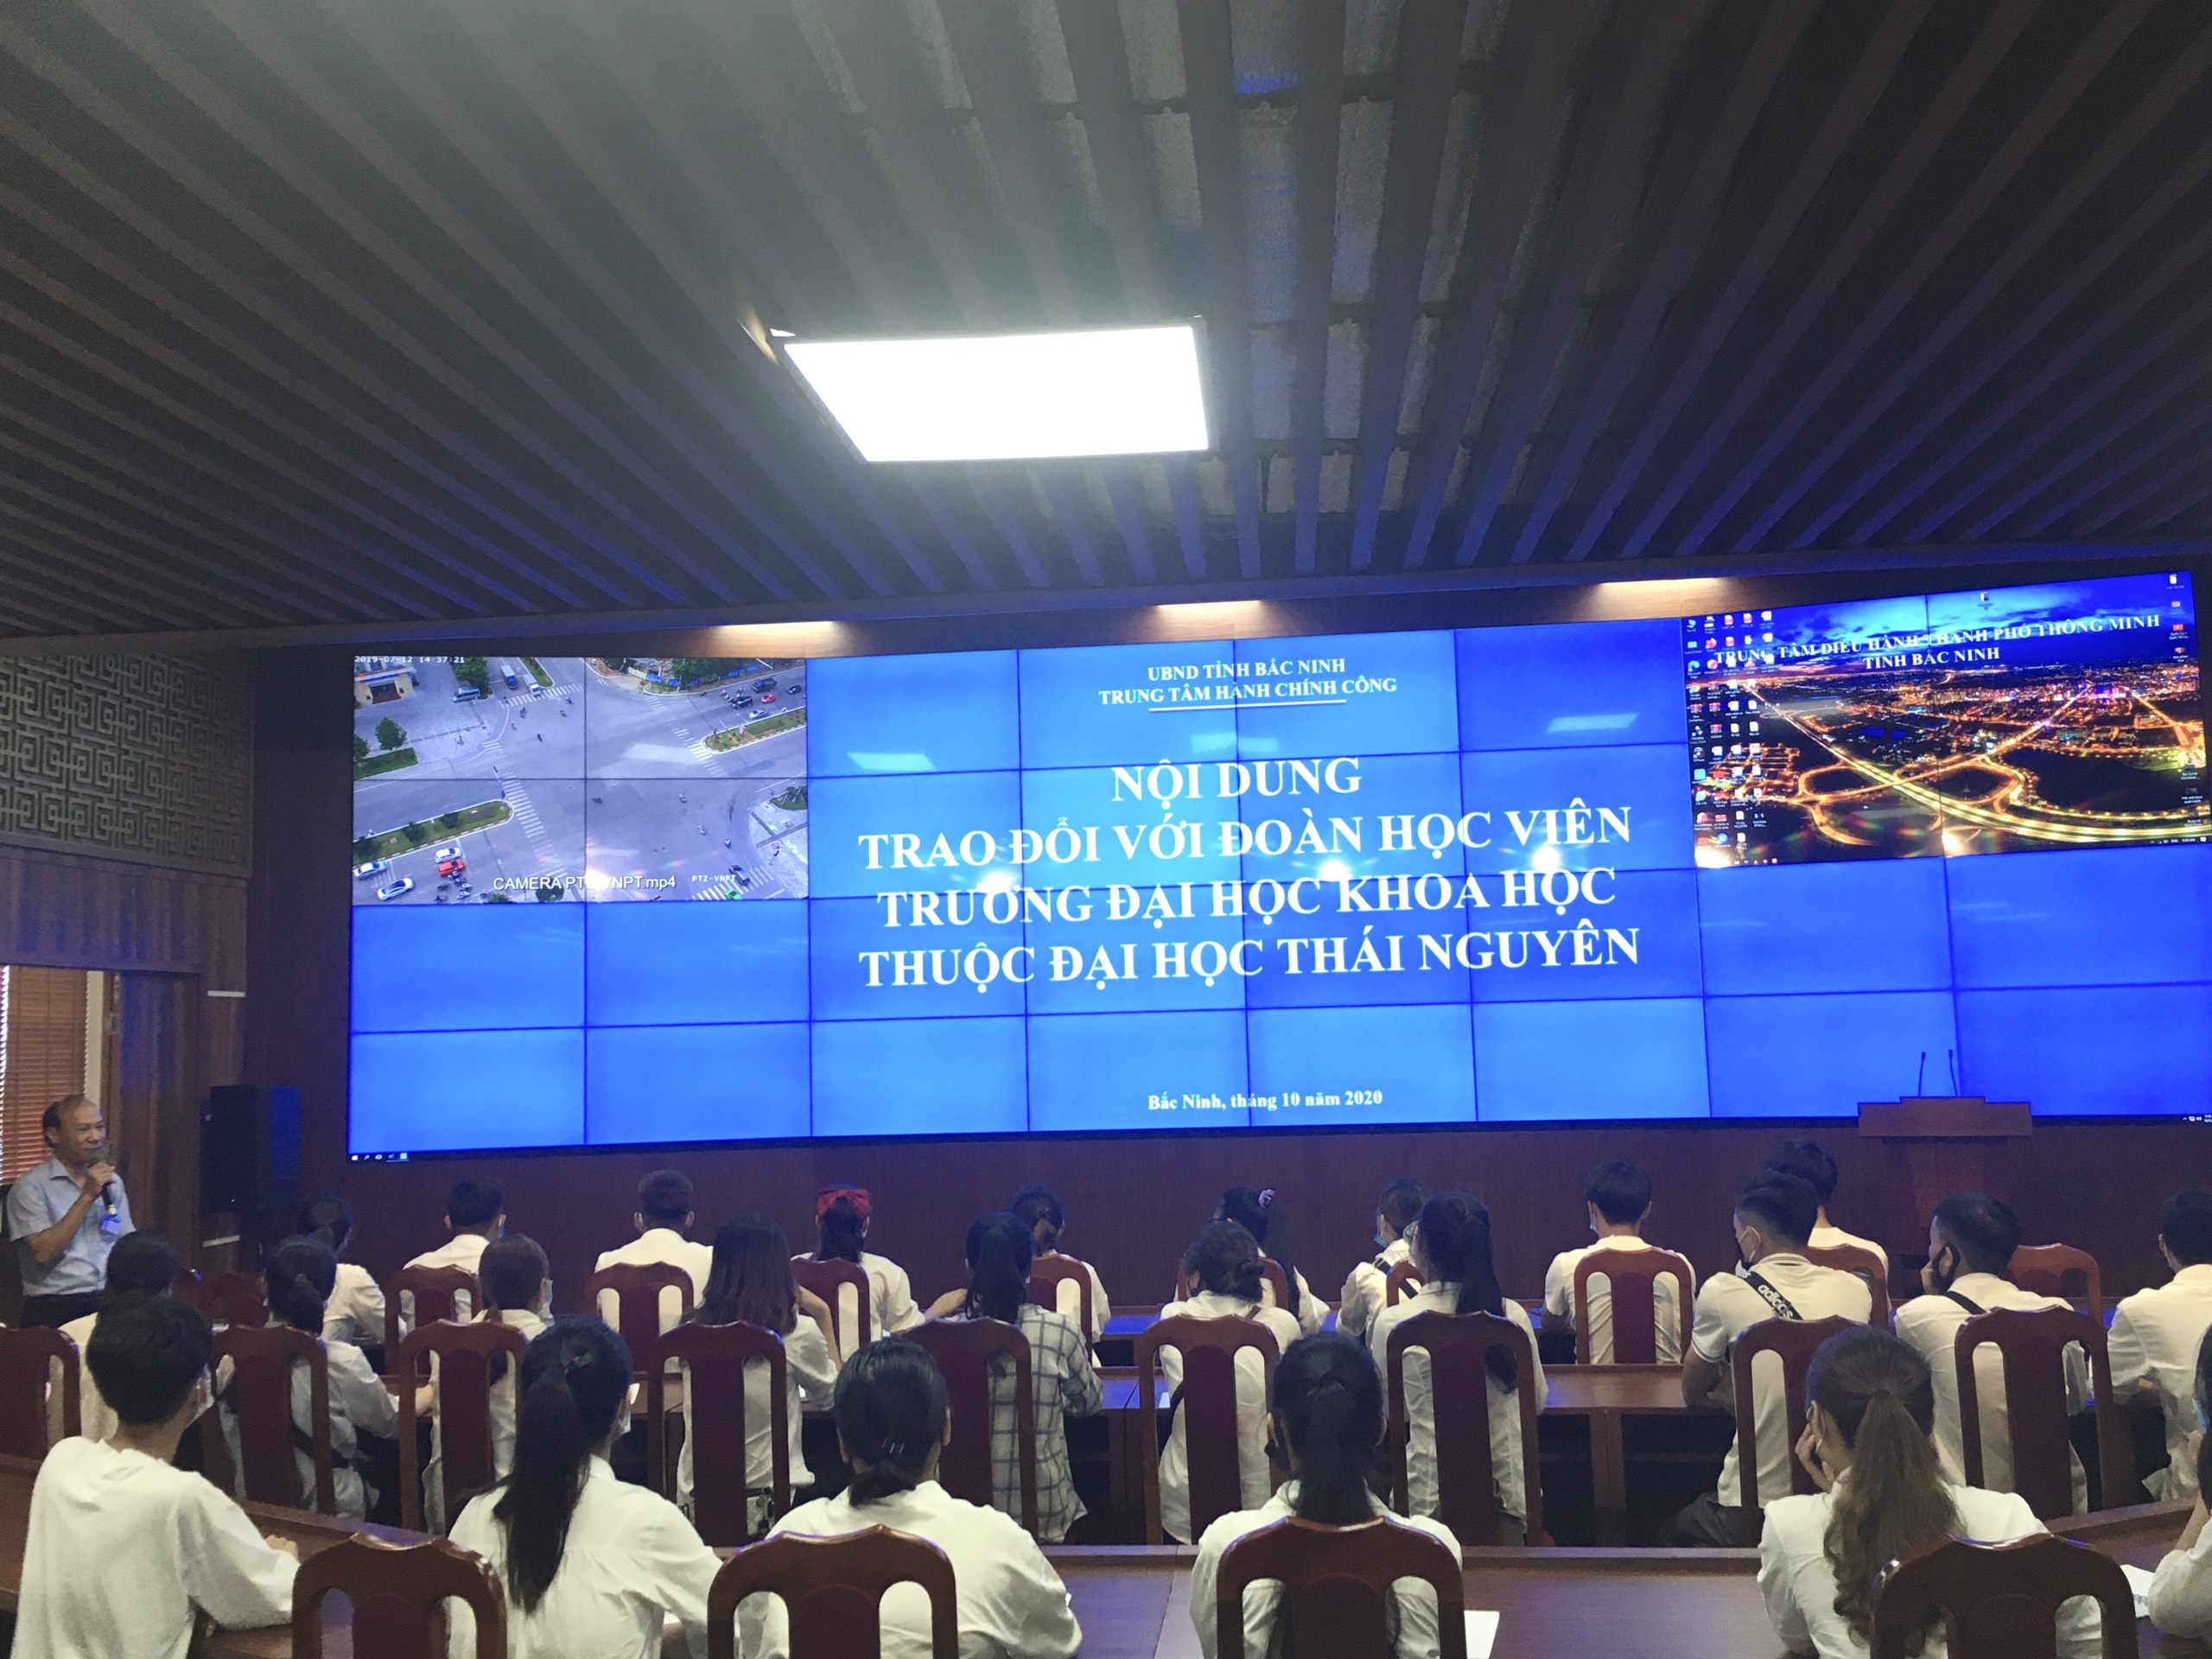 Thực tế chuyên môn 1 ngành Khoa học quản lý tại Trung tâm PVHCC tỉnh Bắc Ninh